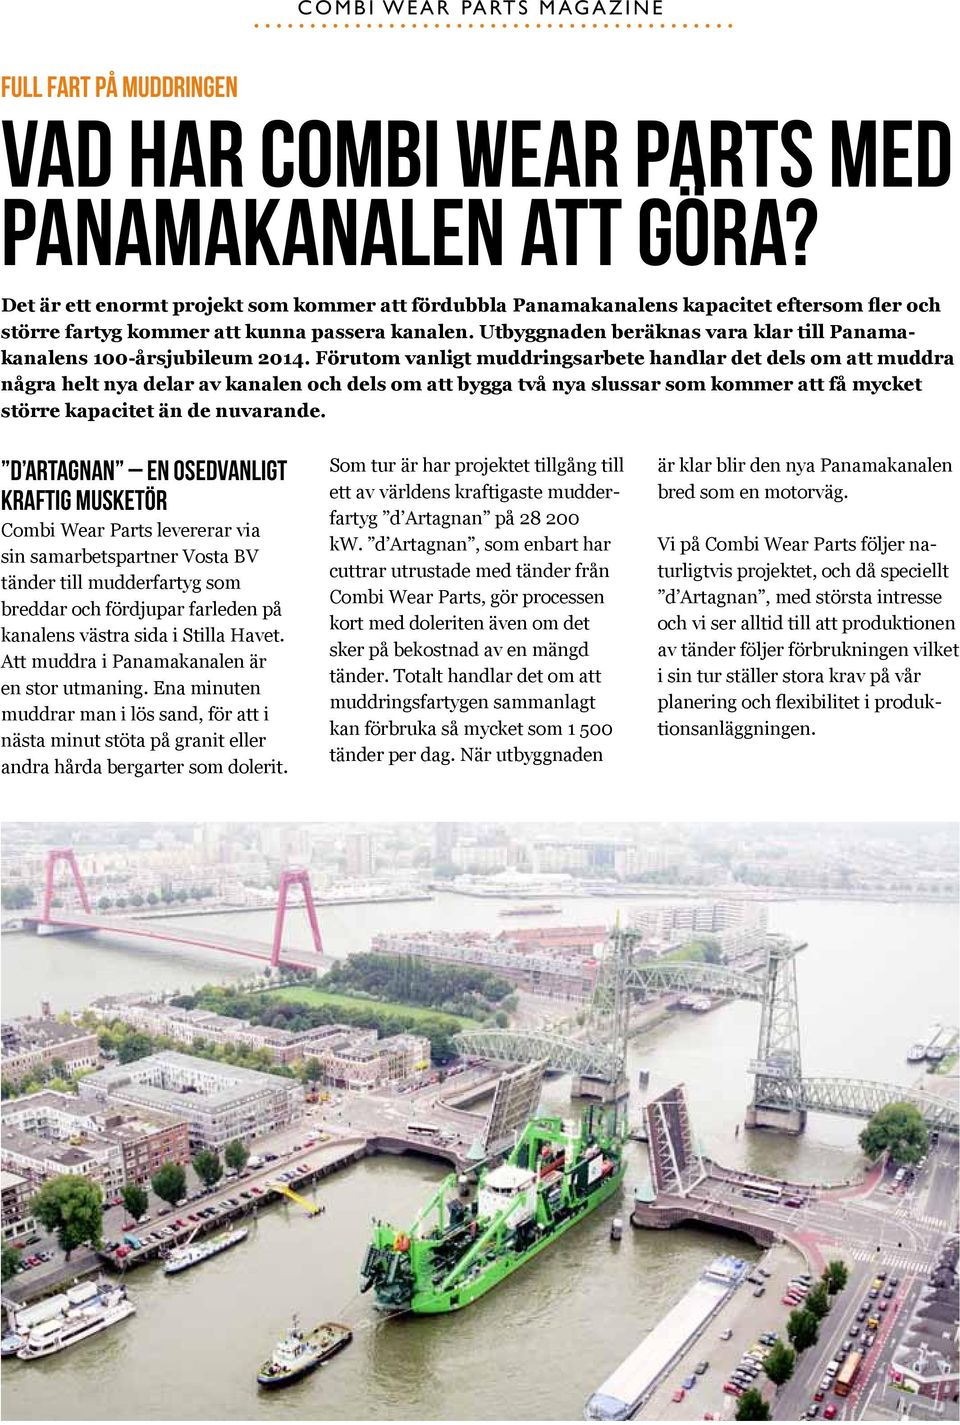 Utbyggnaden beräknas vara klar till Panamakanalens 100-årsjubileum 2014.